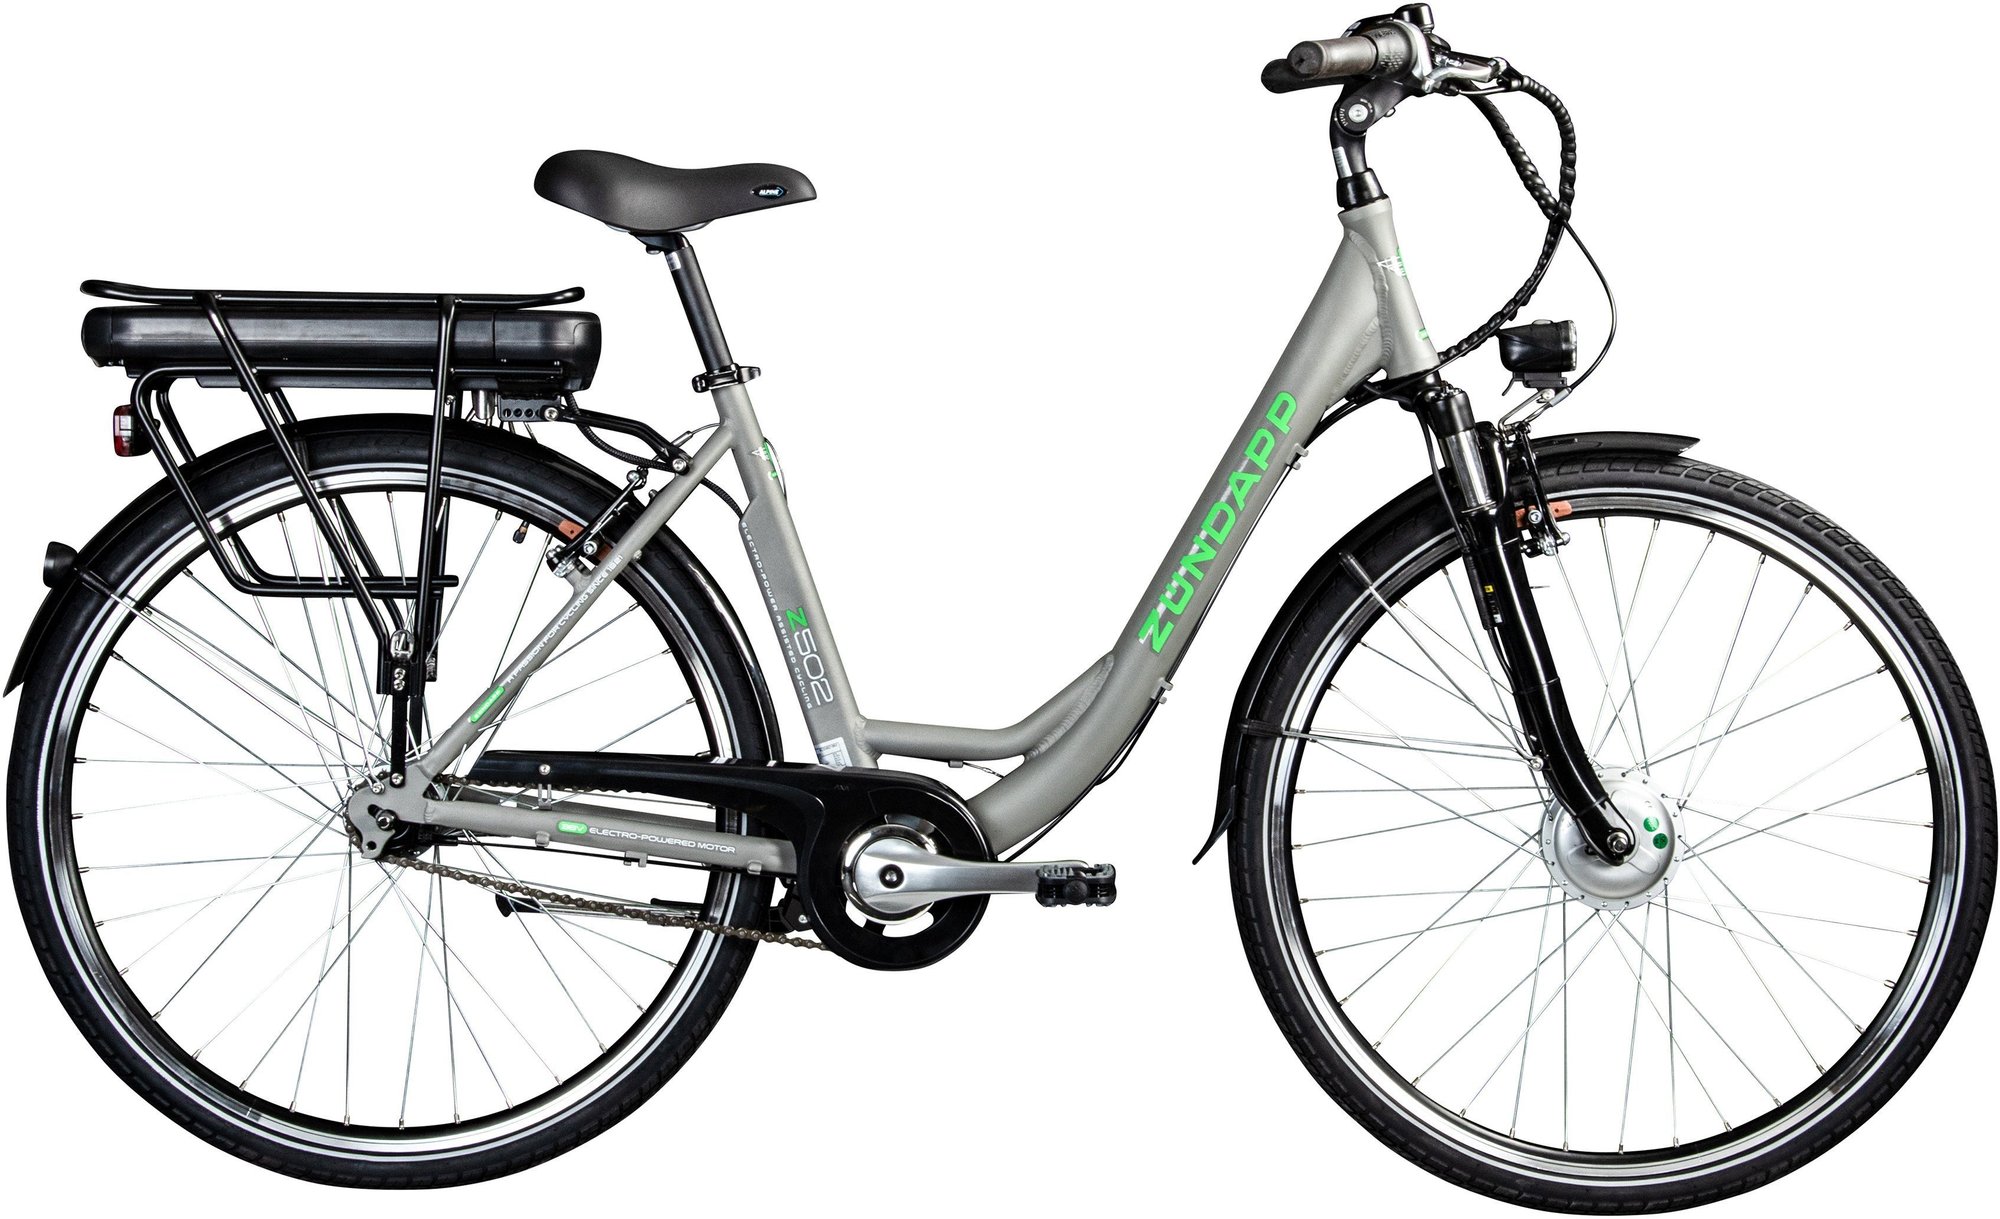 Zündapp Z502 E-Bike grau/grün - Angebote ab 929,00 €